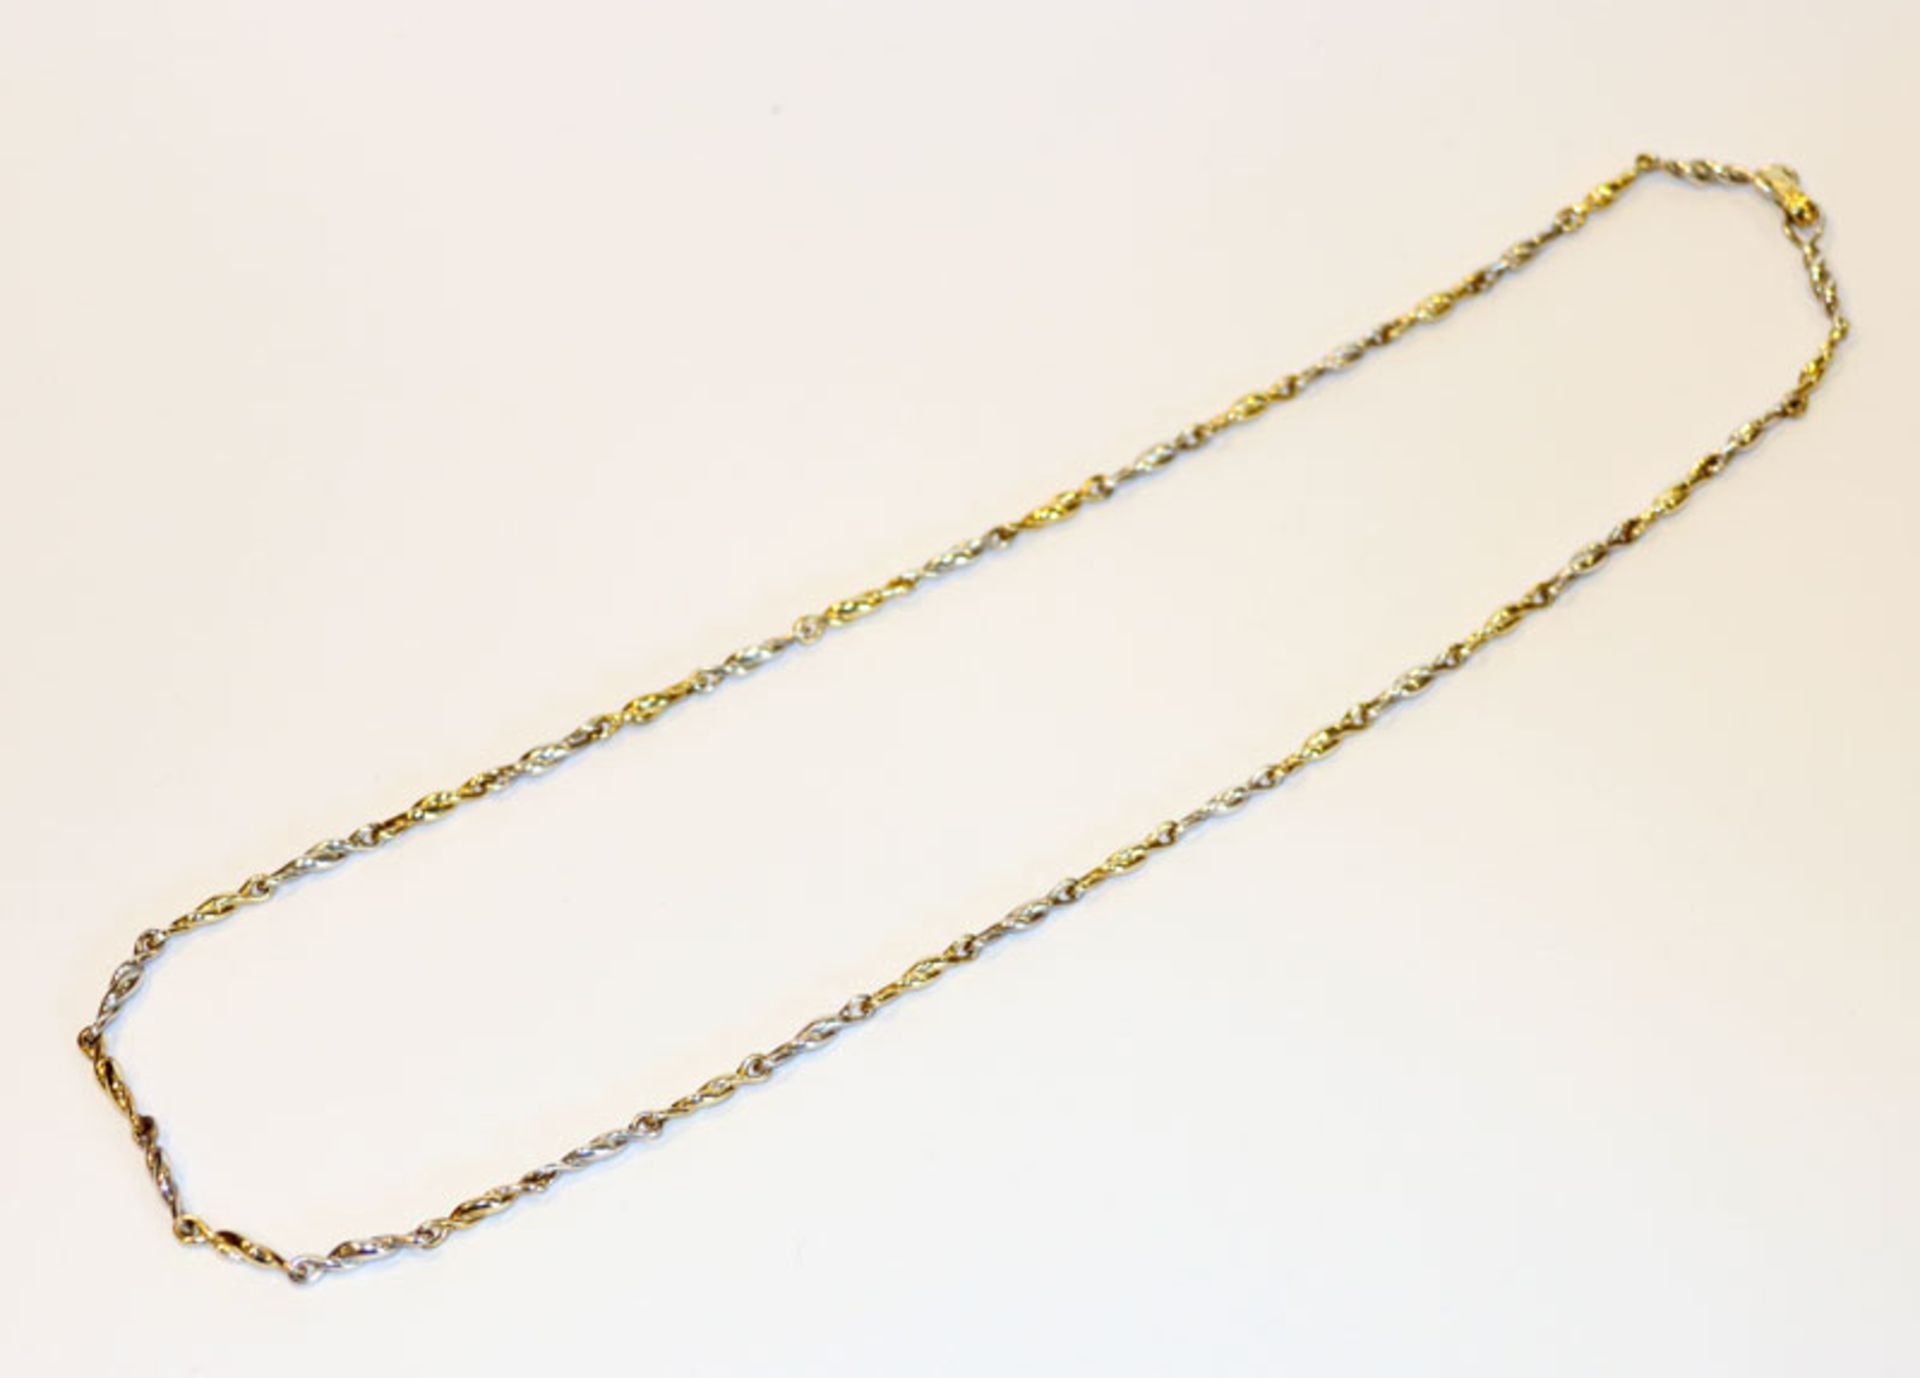 Silber Kette aus gedrehten Gliedern, teils vergoldet, 37 gr., L 60 cm